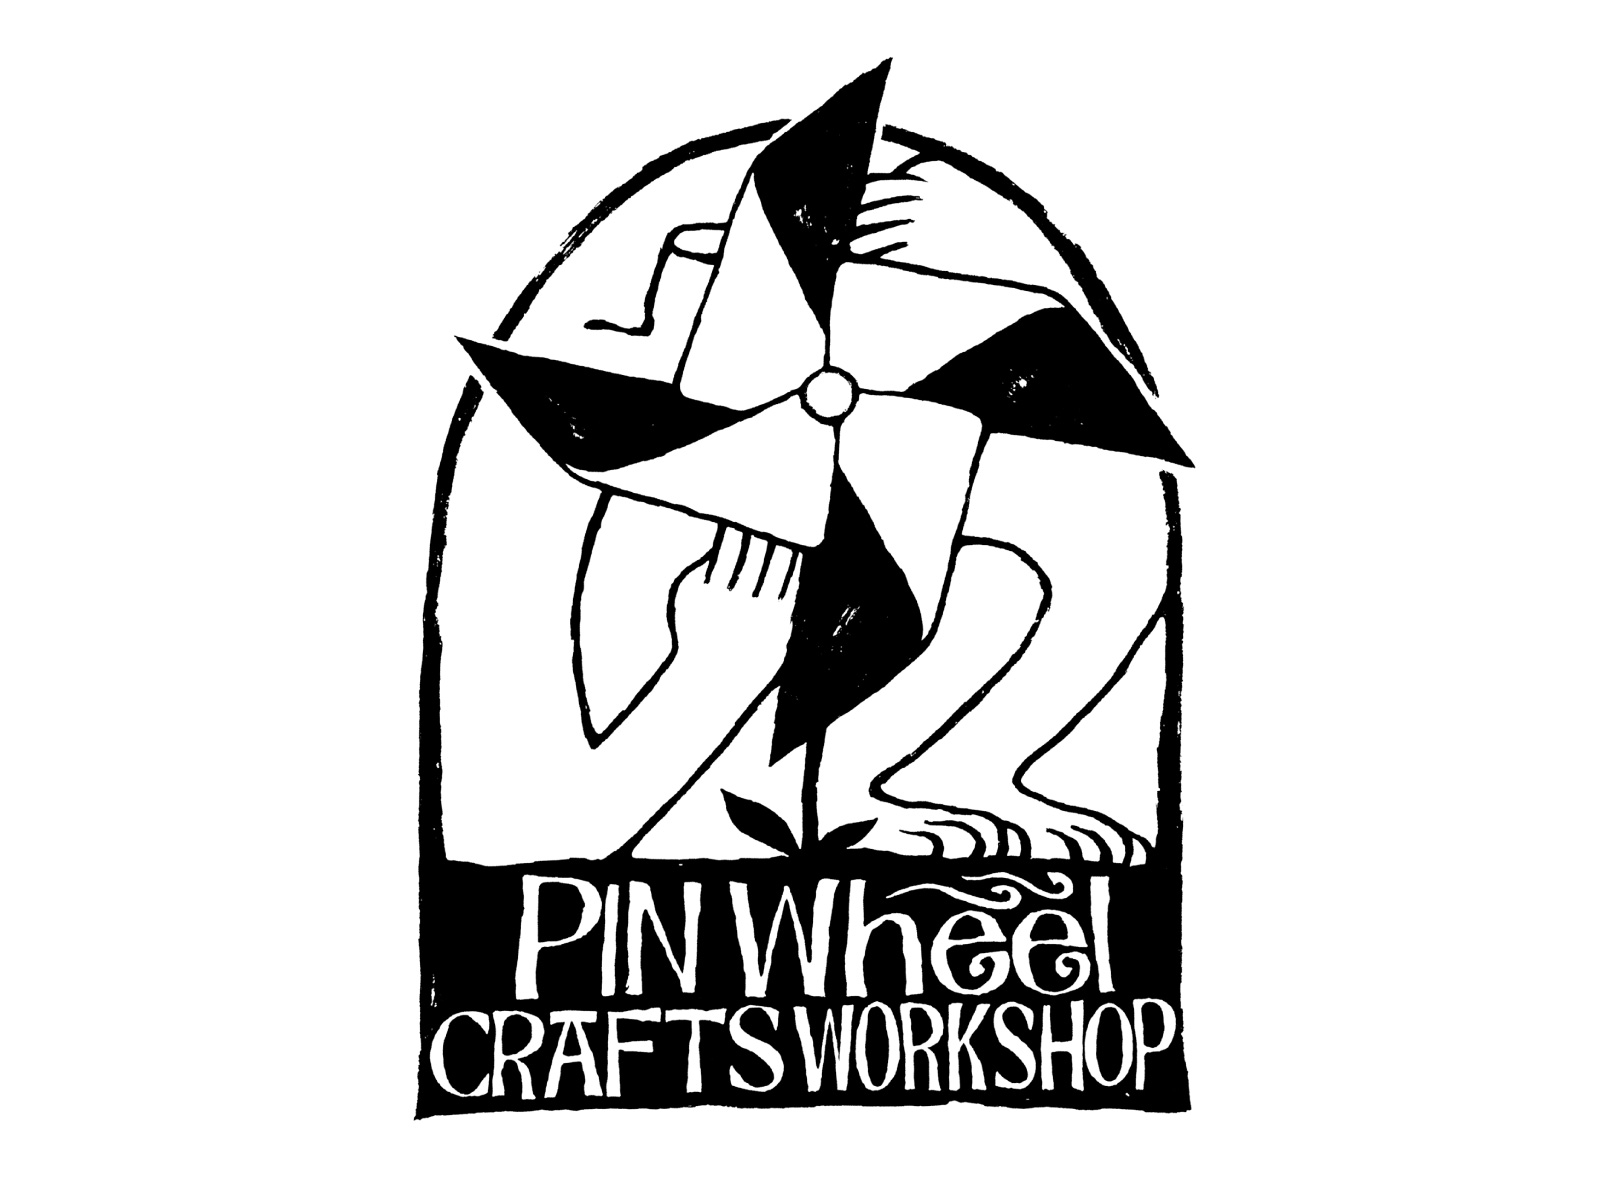 PINWHEEL CRAFTS WORKSHOP